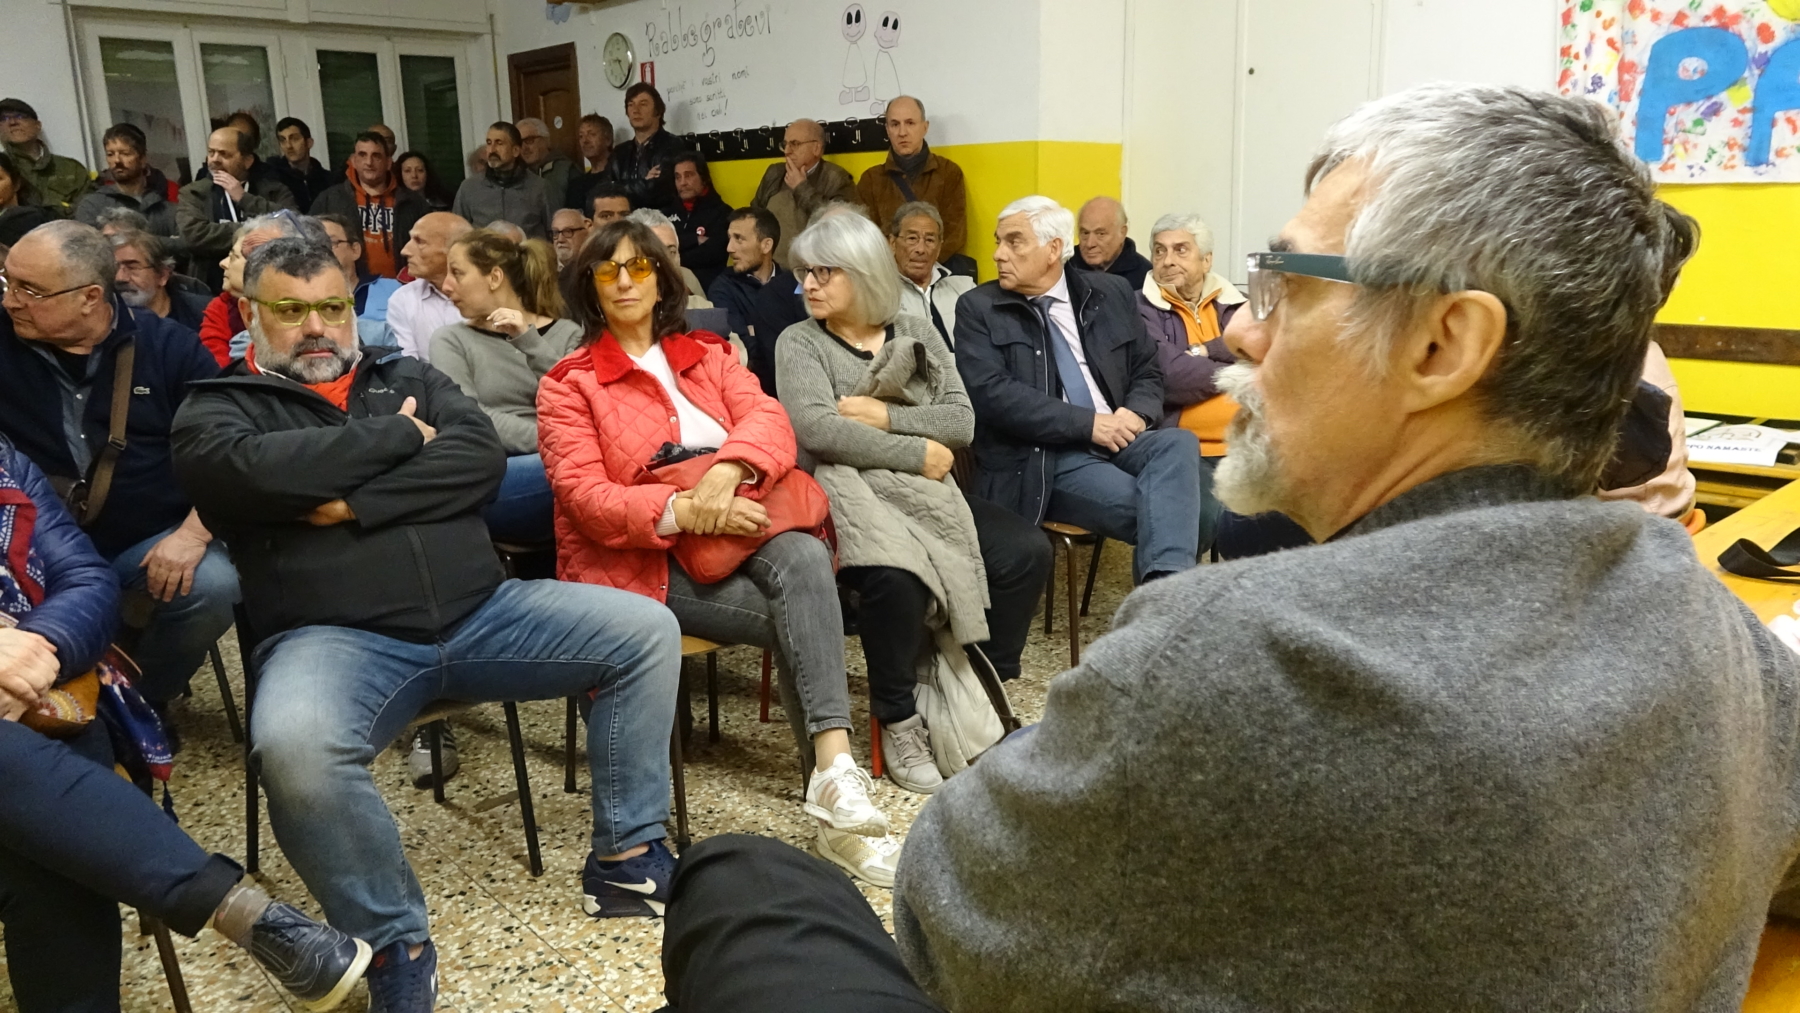 Migranti a Struppa, Don Martino rassicura: "Hanno tutti un lavoro"